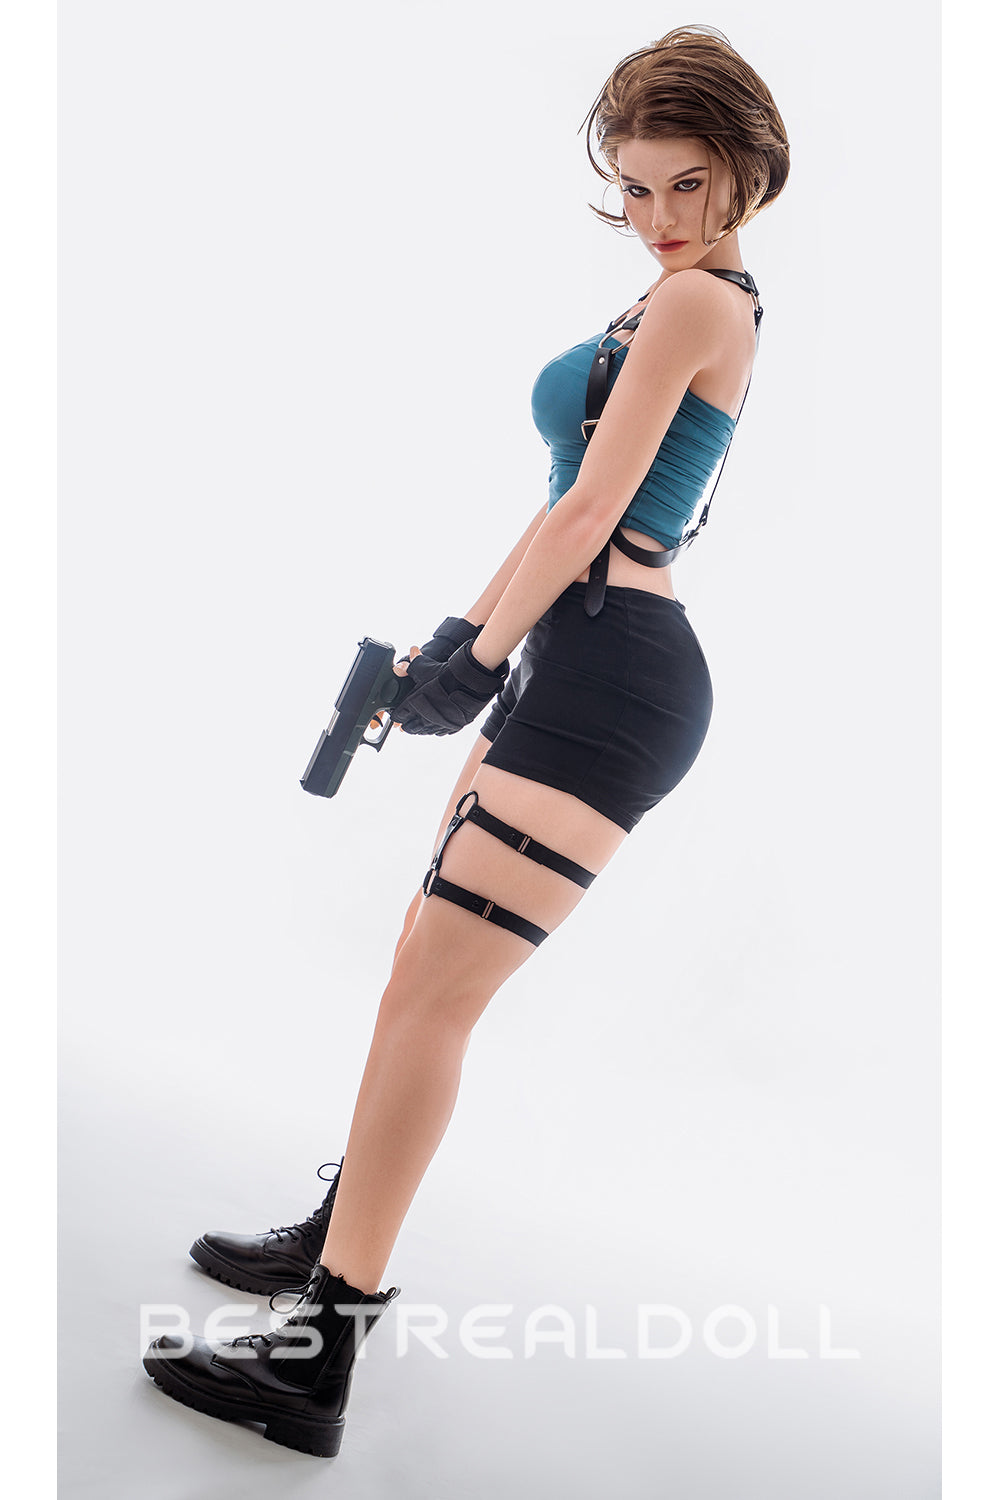 Zeta 164cm Realistic Sex Doll Silicone Head TPE Body Medium Boobs Adult Love Doll